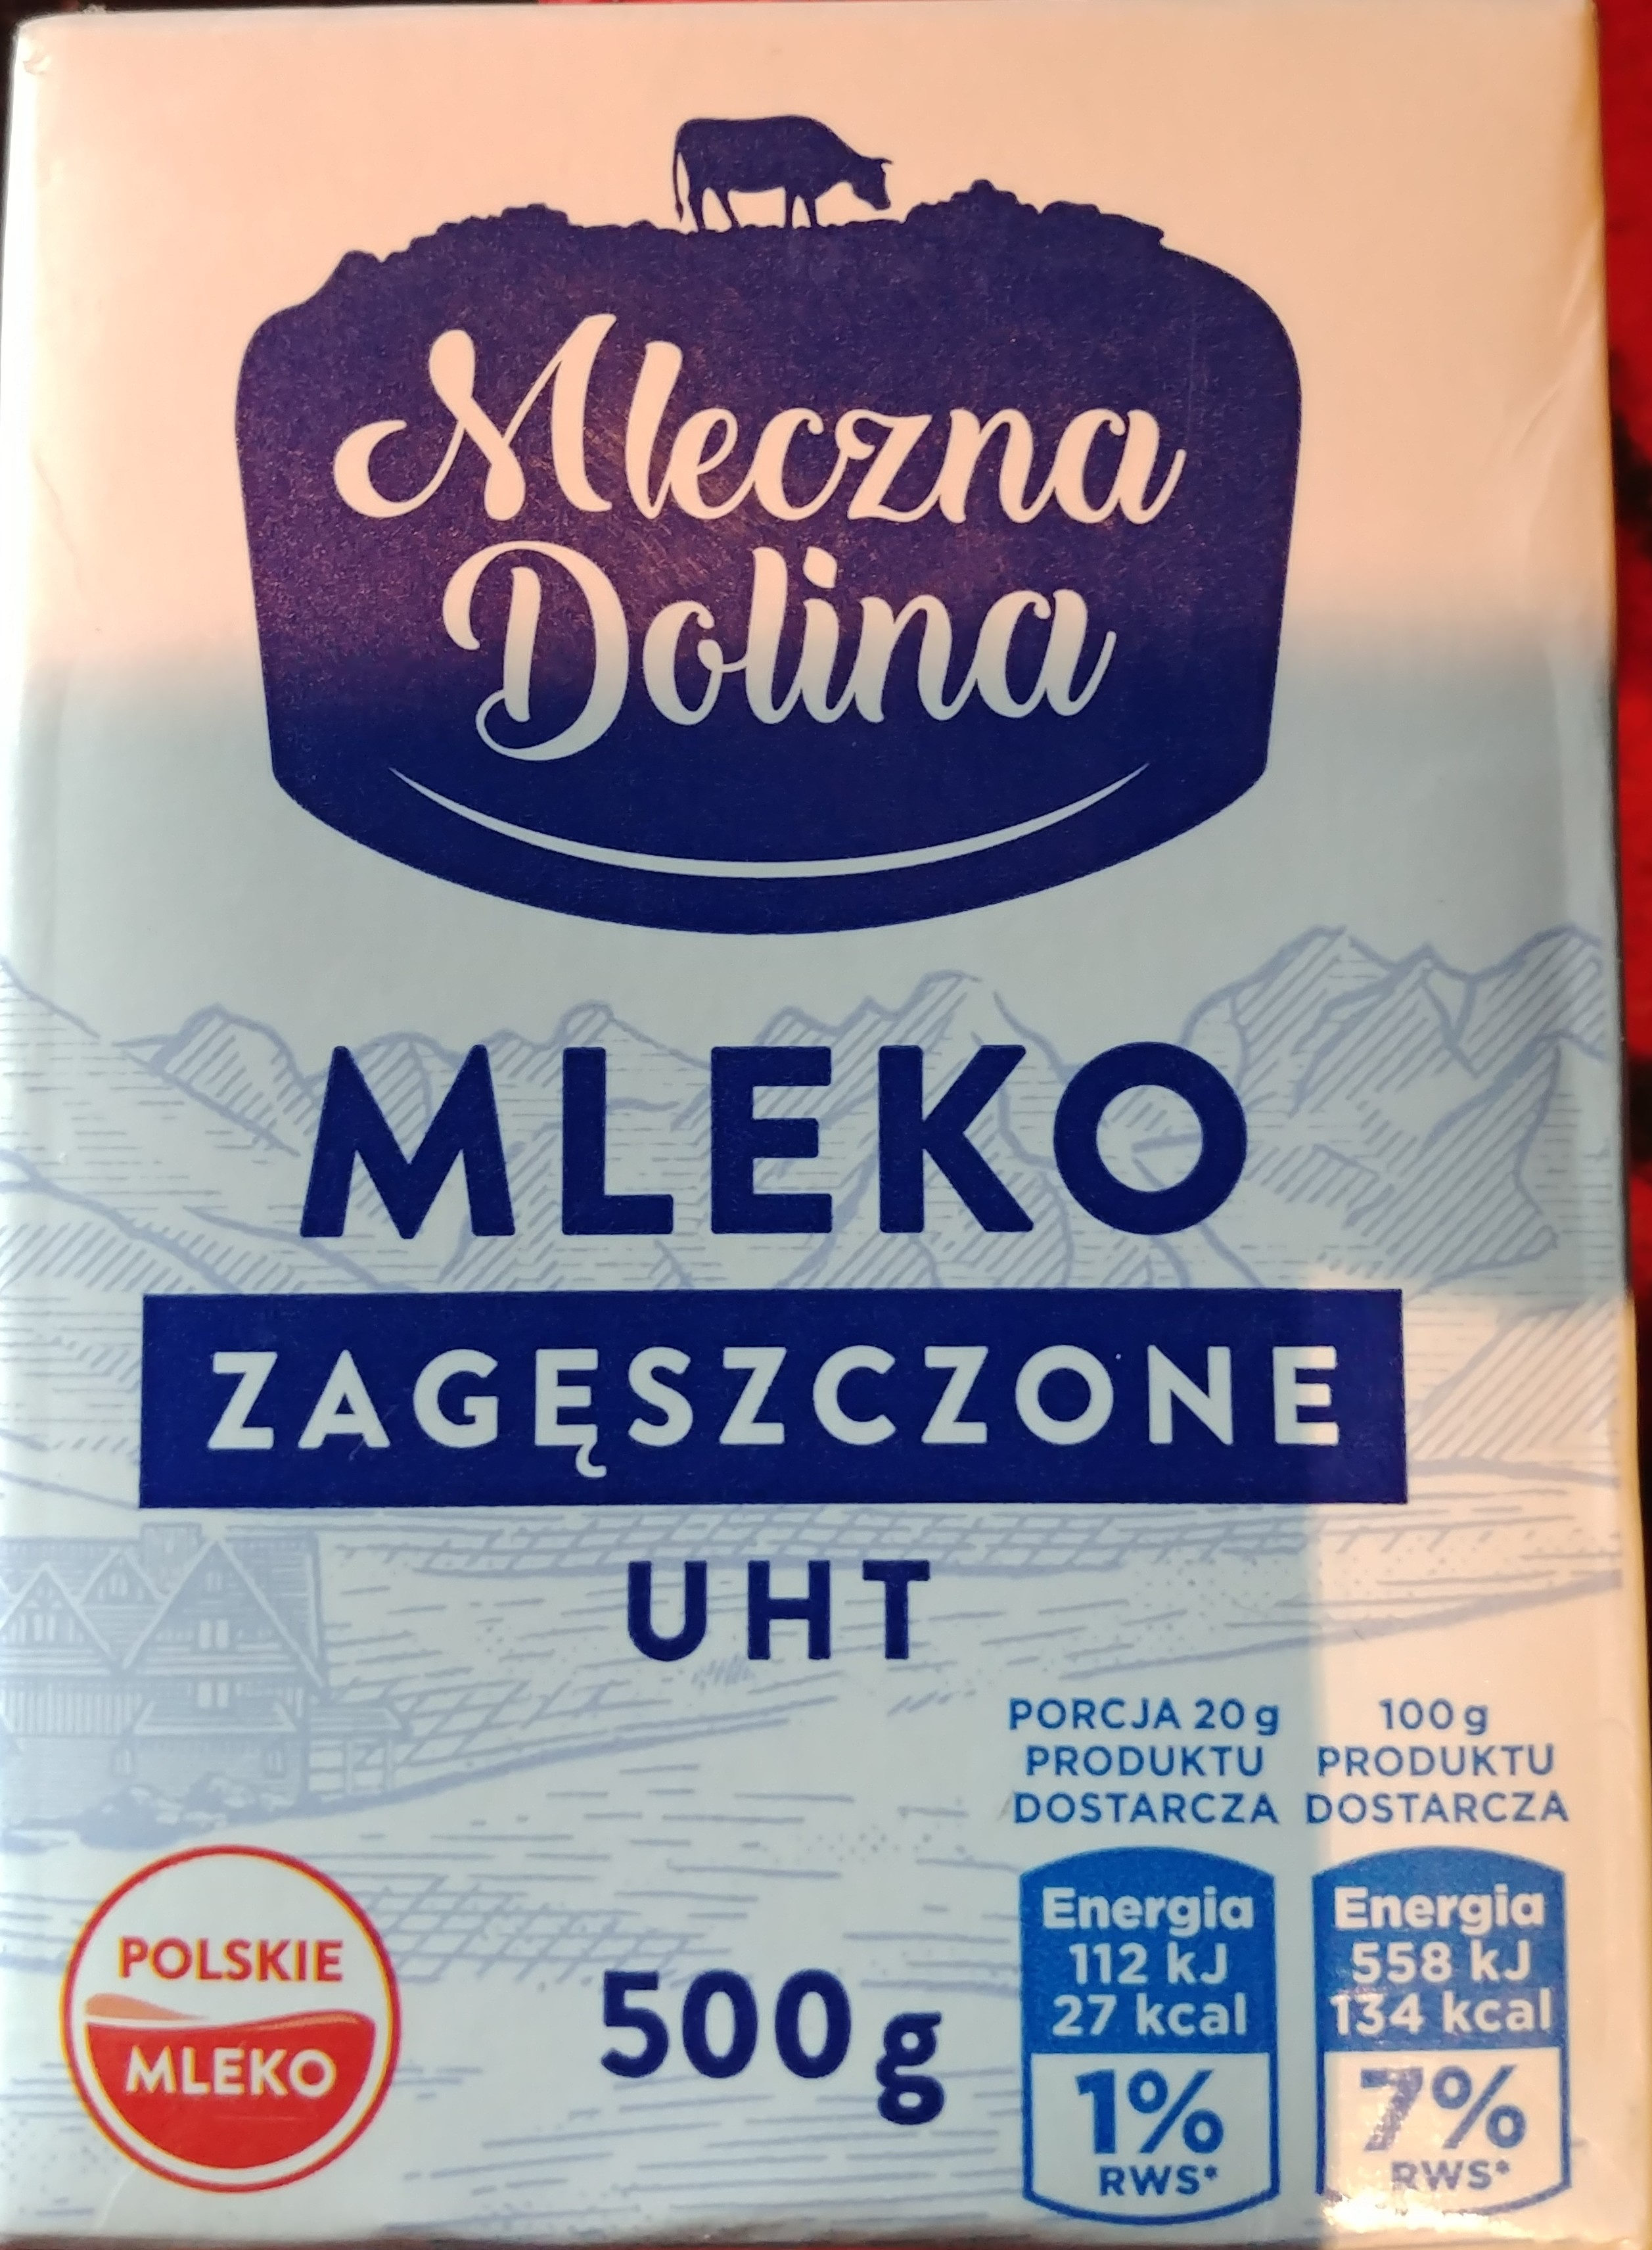 Mleko zagęszczone UHT 7,5% - Product - pl